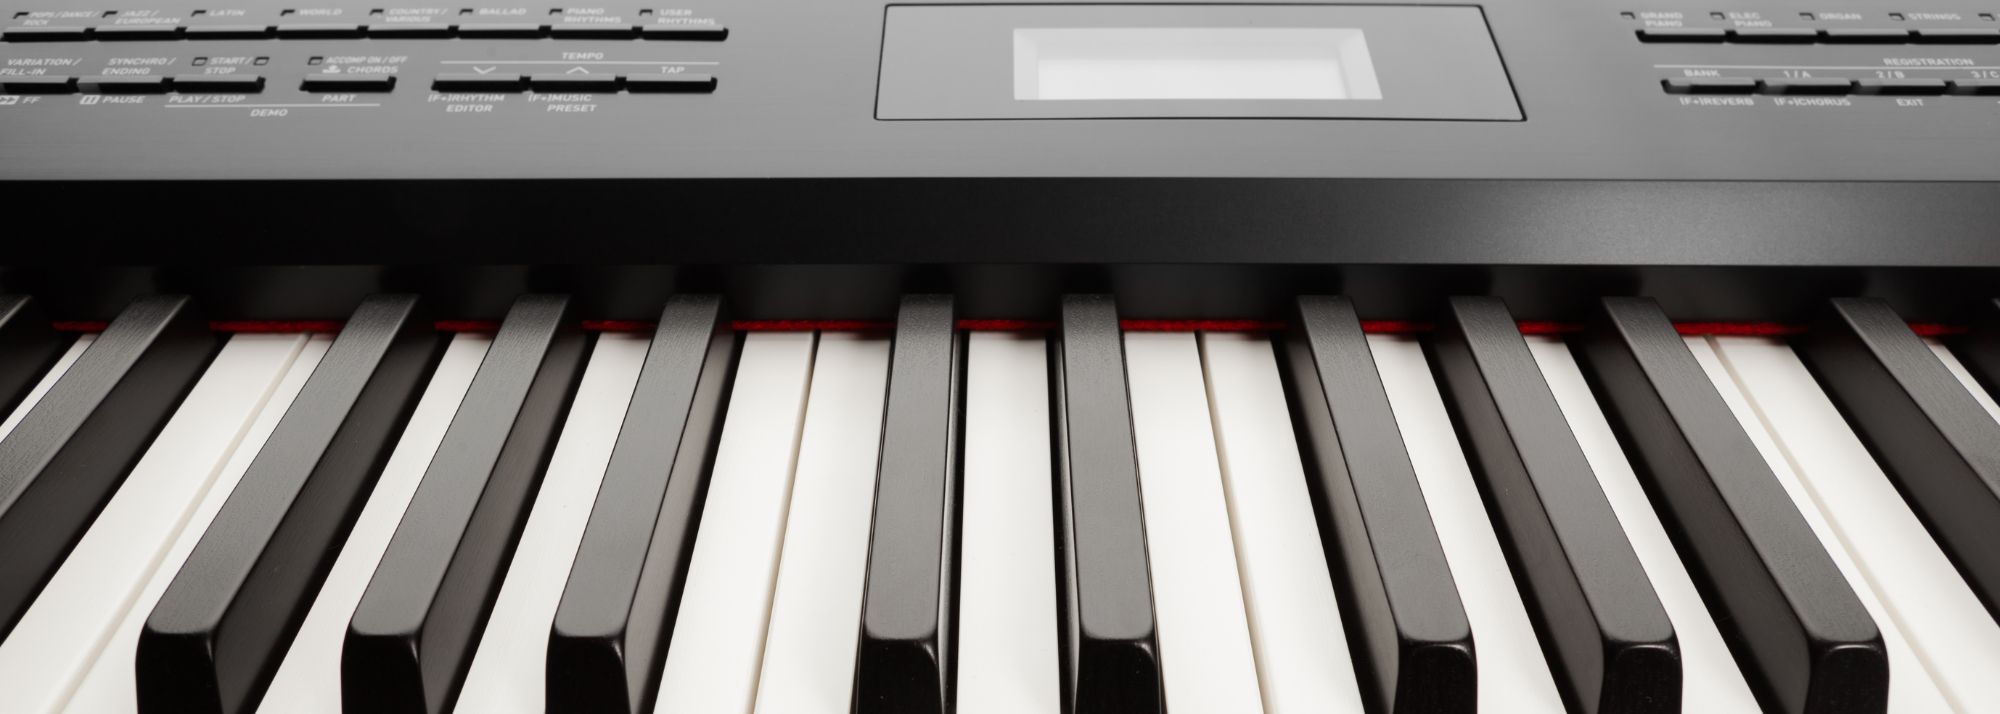 Pianos numériques et claviers électroniques - Desevedavy